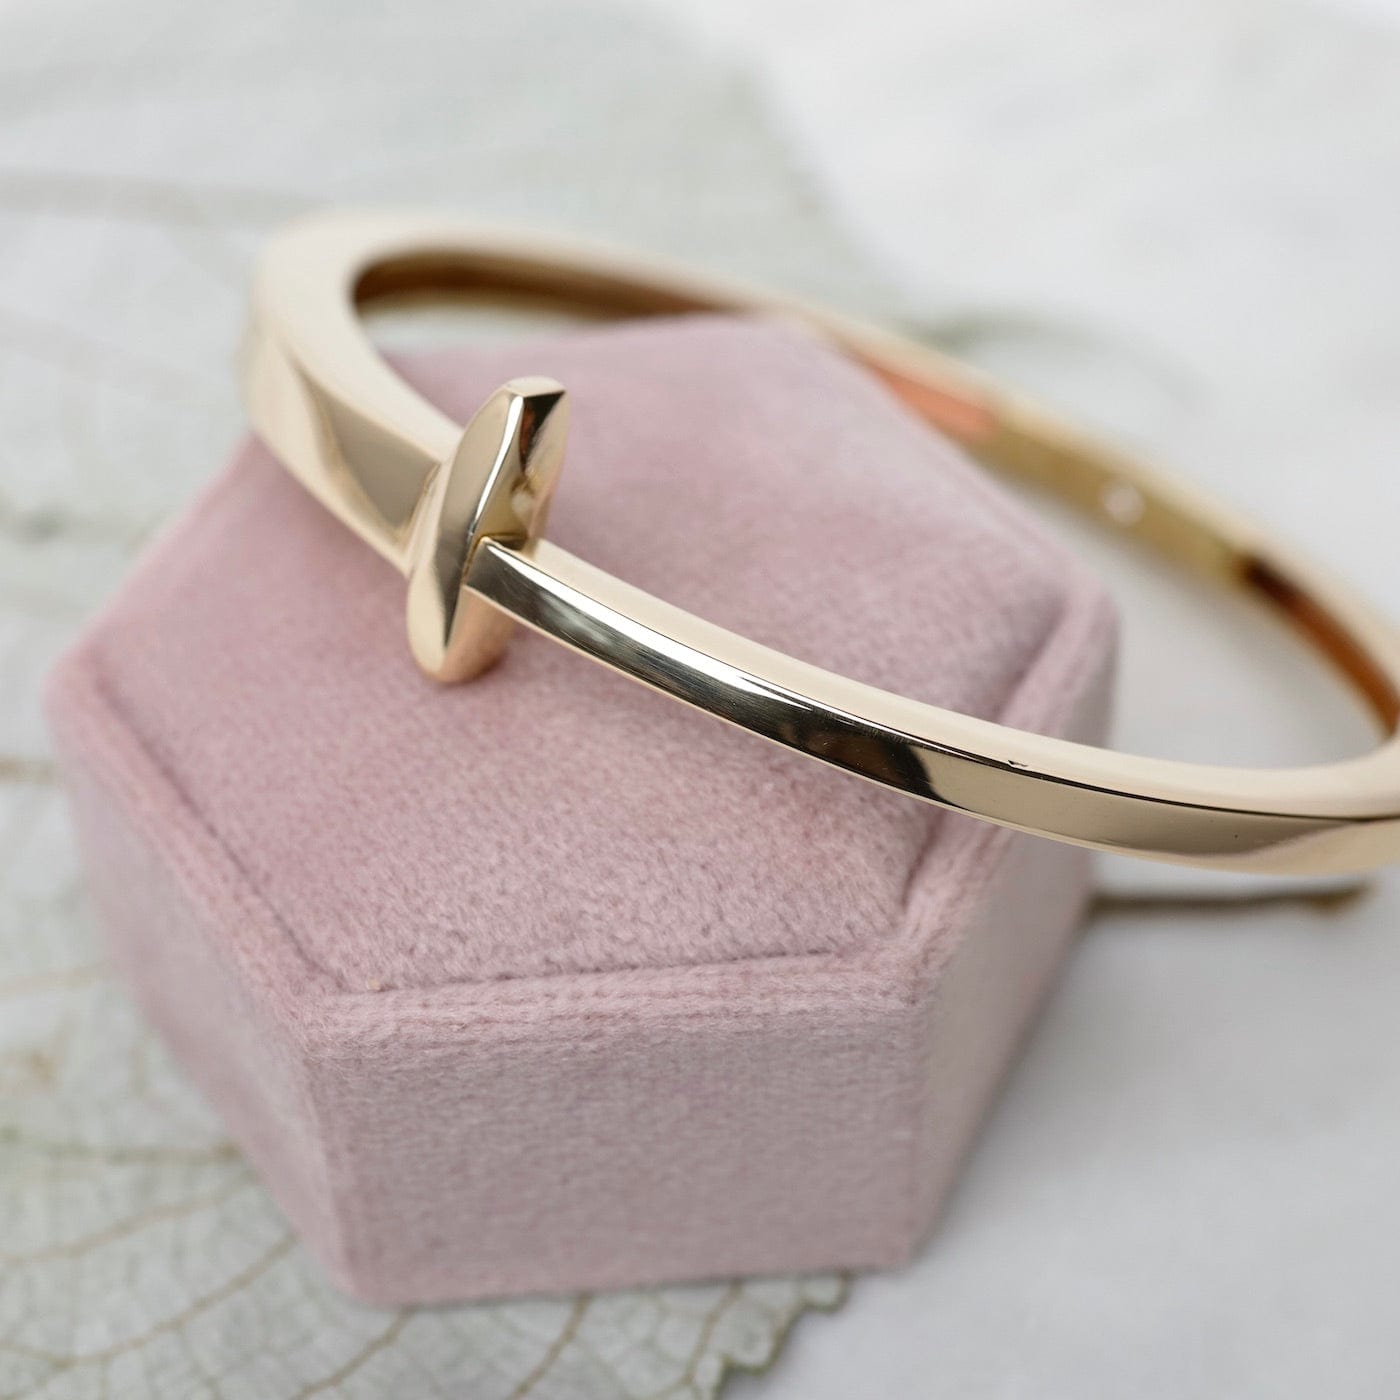 Authentic Cartier 18k Rose Gold Juste un Clou Diamond Nail Bracelet, Size  17 | eBay